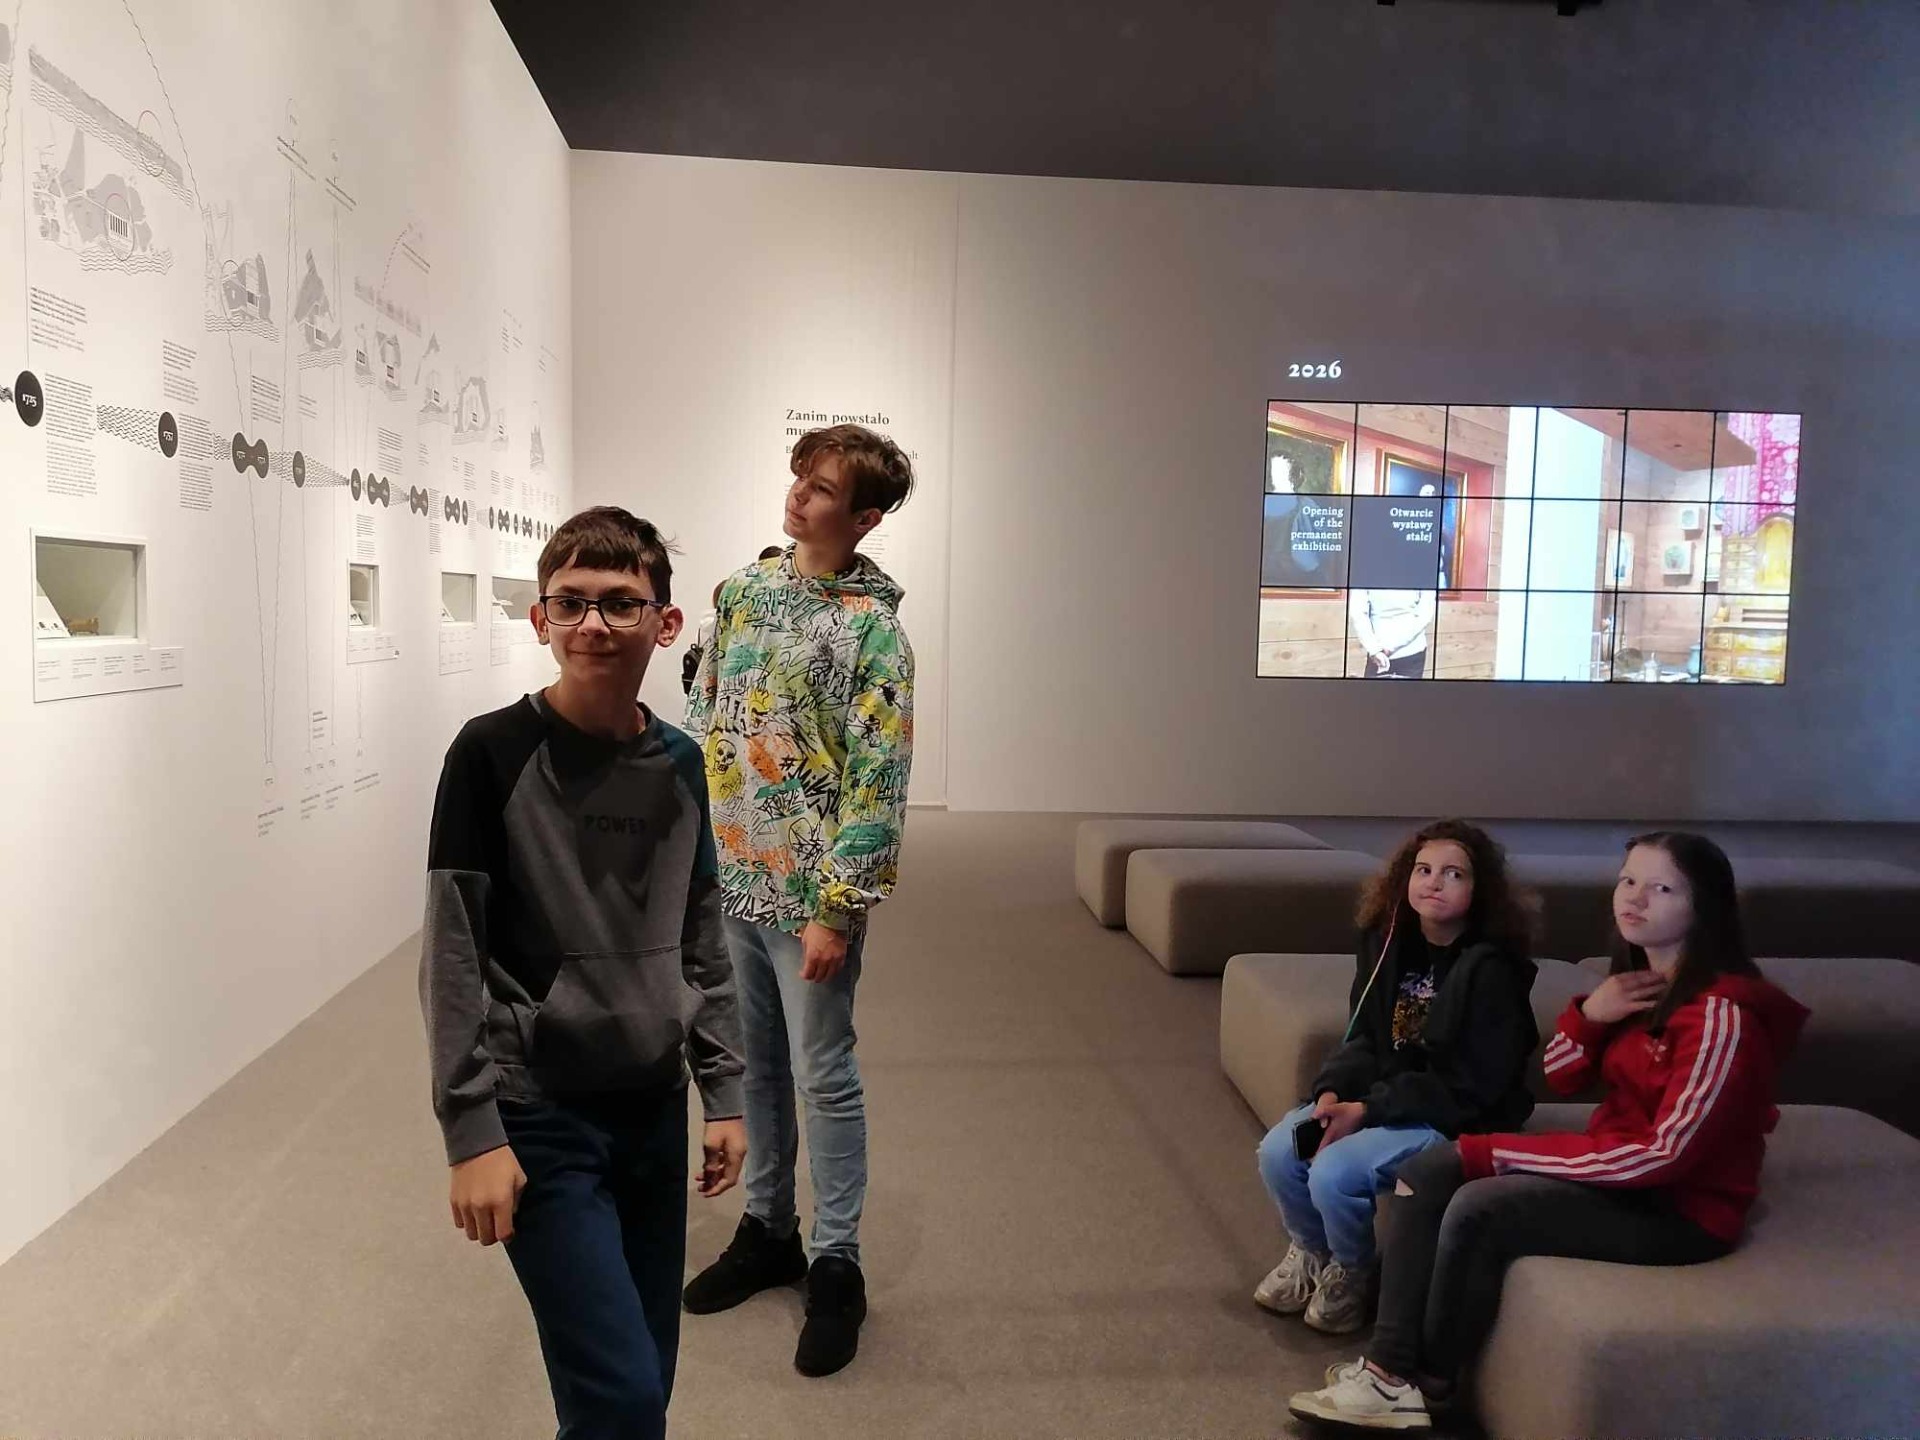 Uczniowie oglądający wystawę w Muzeum Historii Polski.